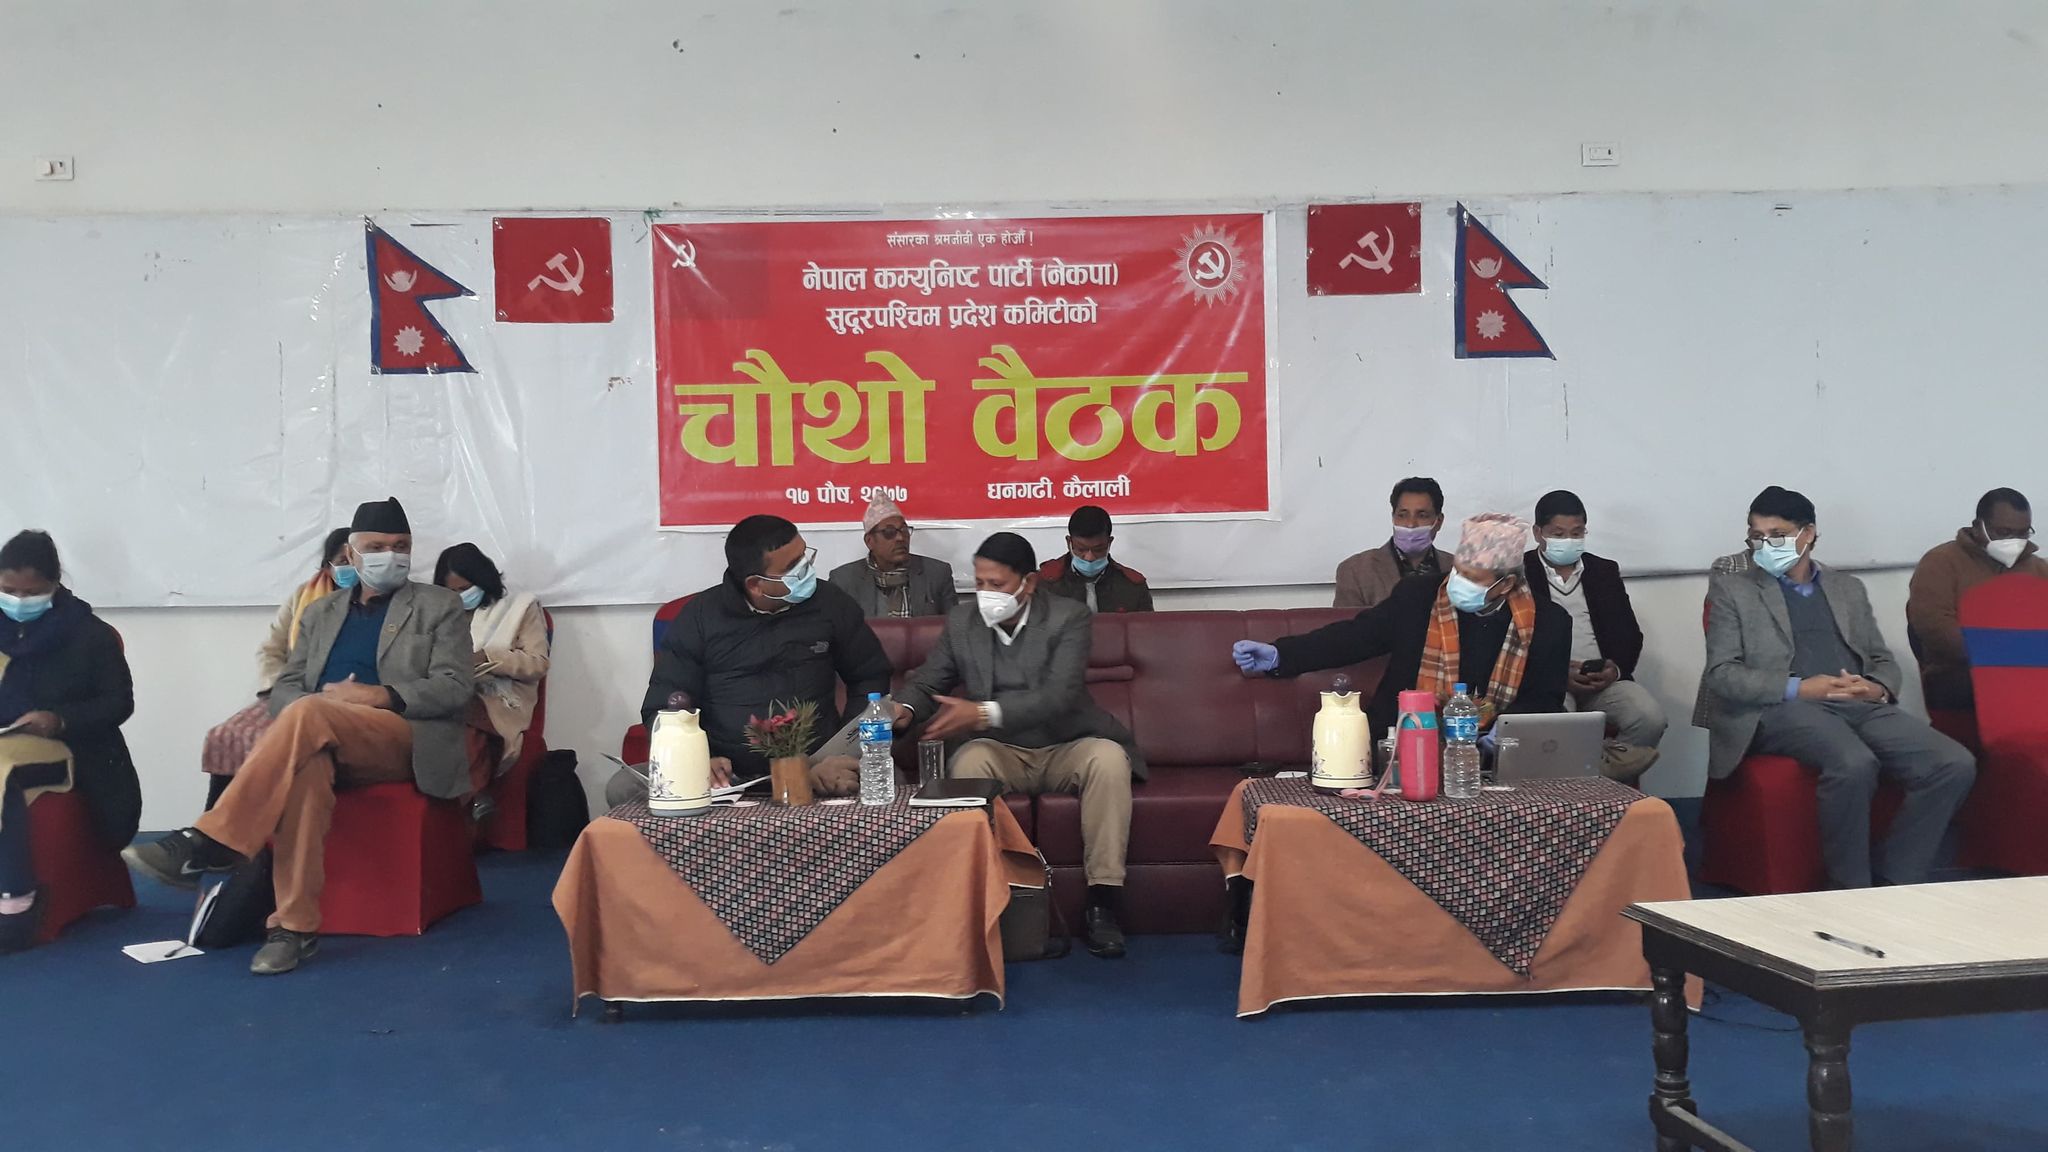 सुदूरपश्चिम प्रदेशका अध्यक्ष कर्ण थापासहित चार जिल्लाका अध्यक्षलाई दाहाल–नेपाल समूहद्वारा नेकपा  कारबाही